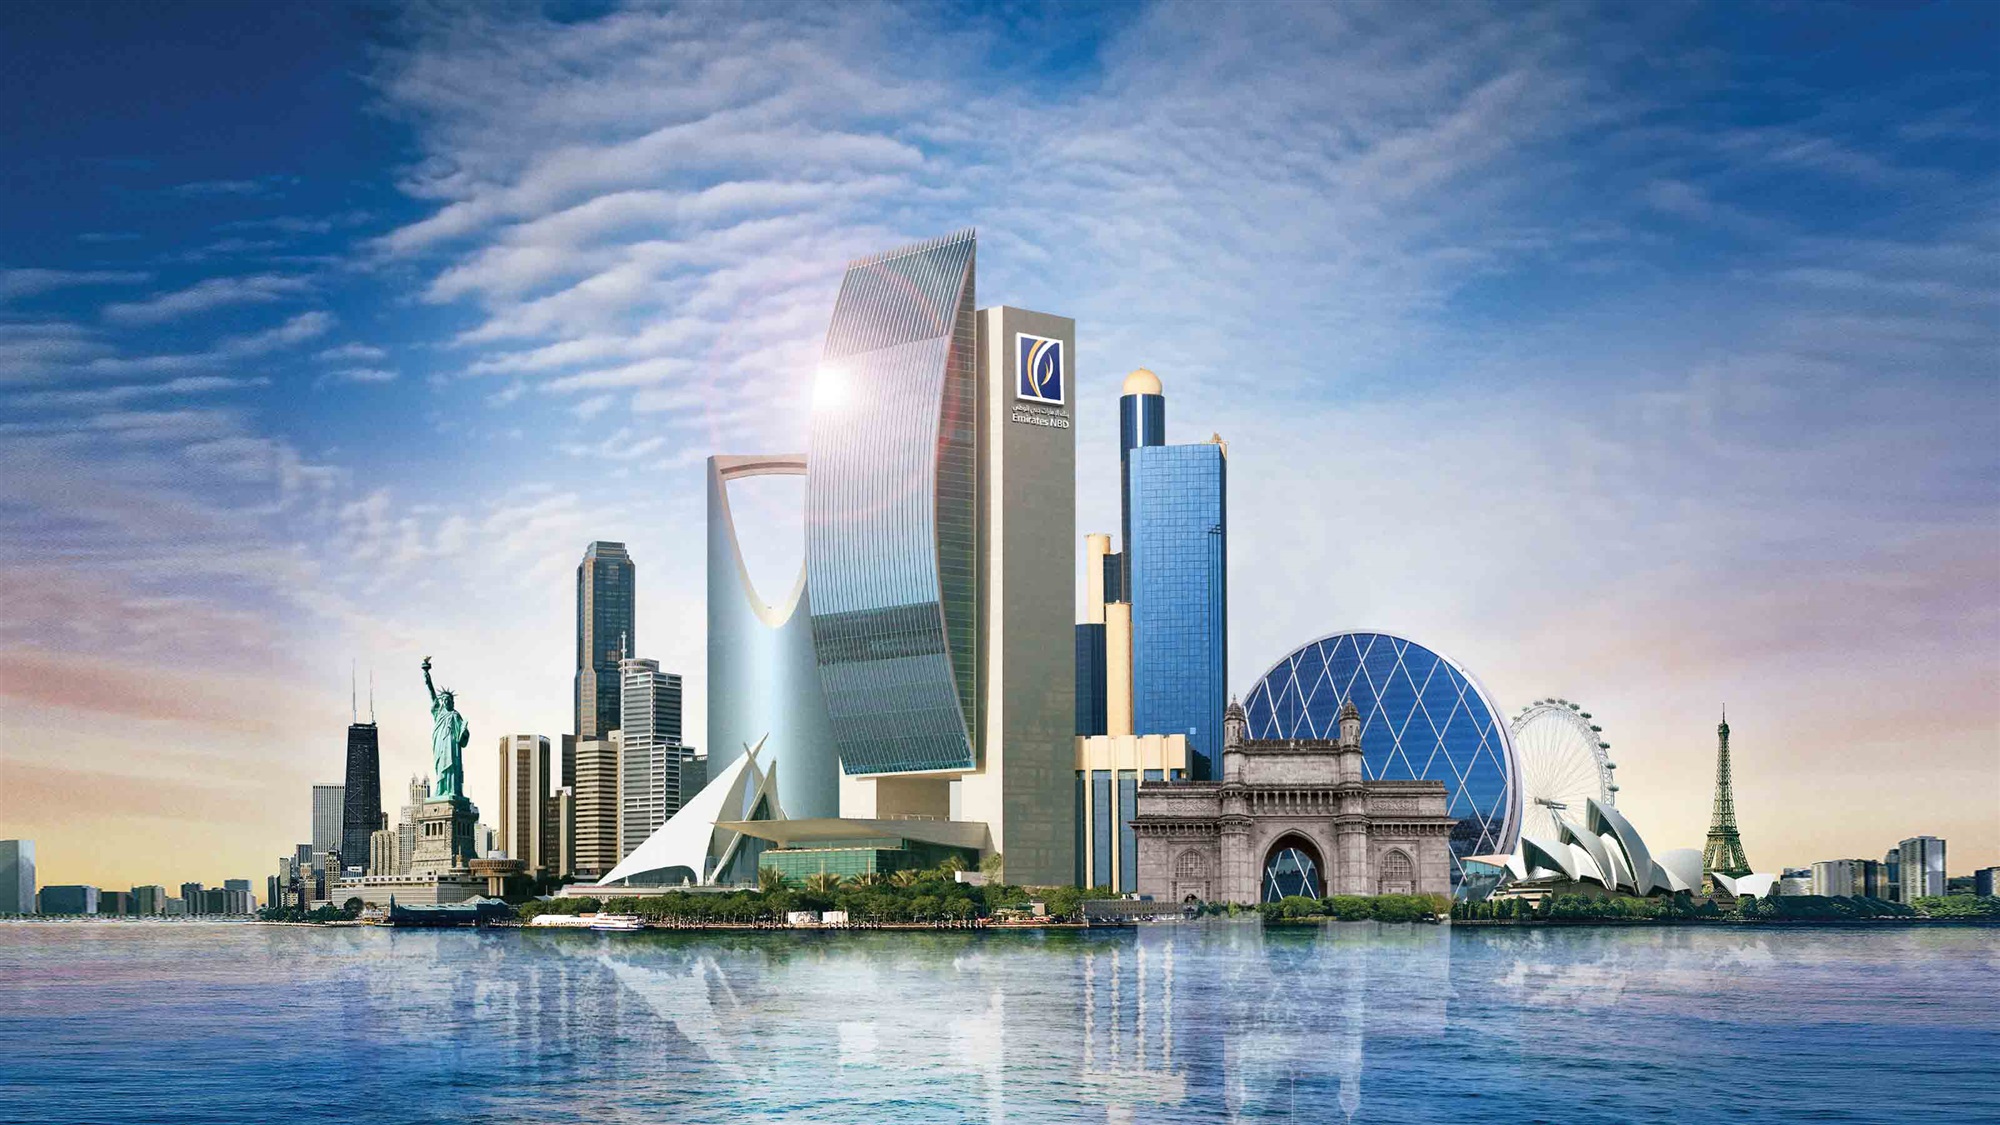 بنكي | الإمارات دبي الوطني أفضل بنك إماراتي لعام 2020 من "يوروموني"